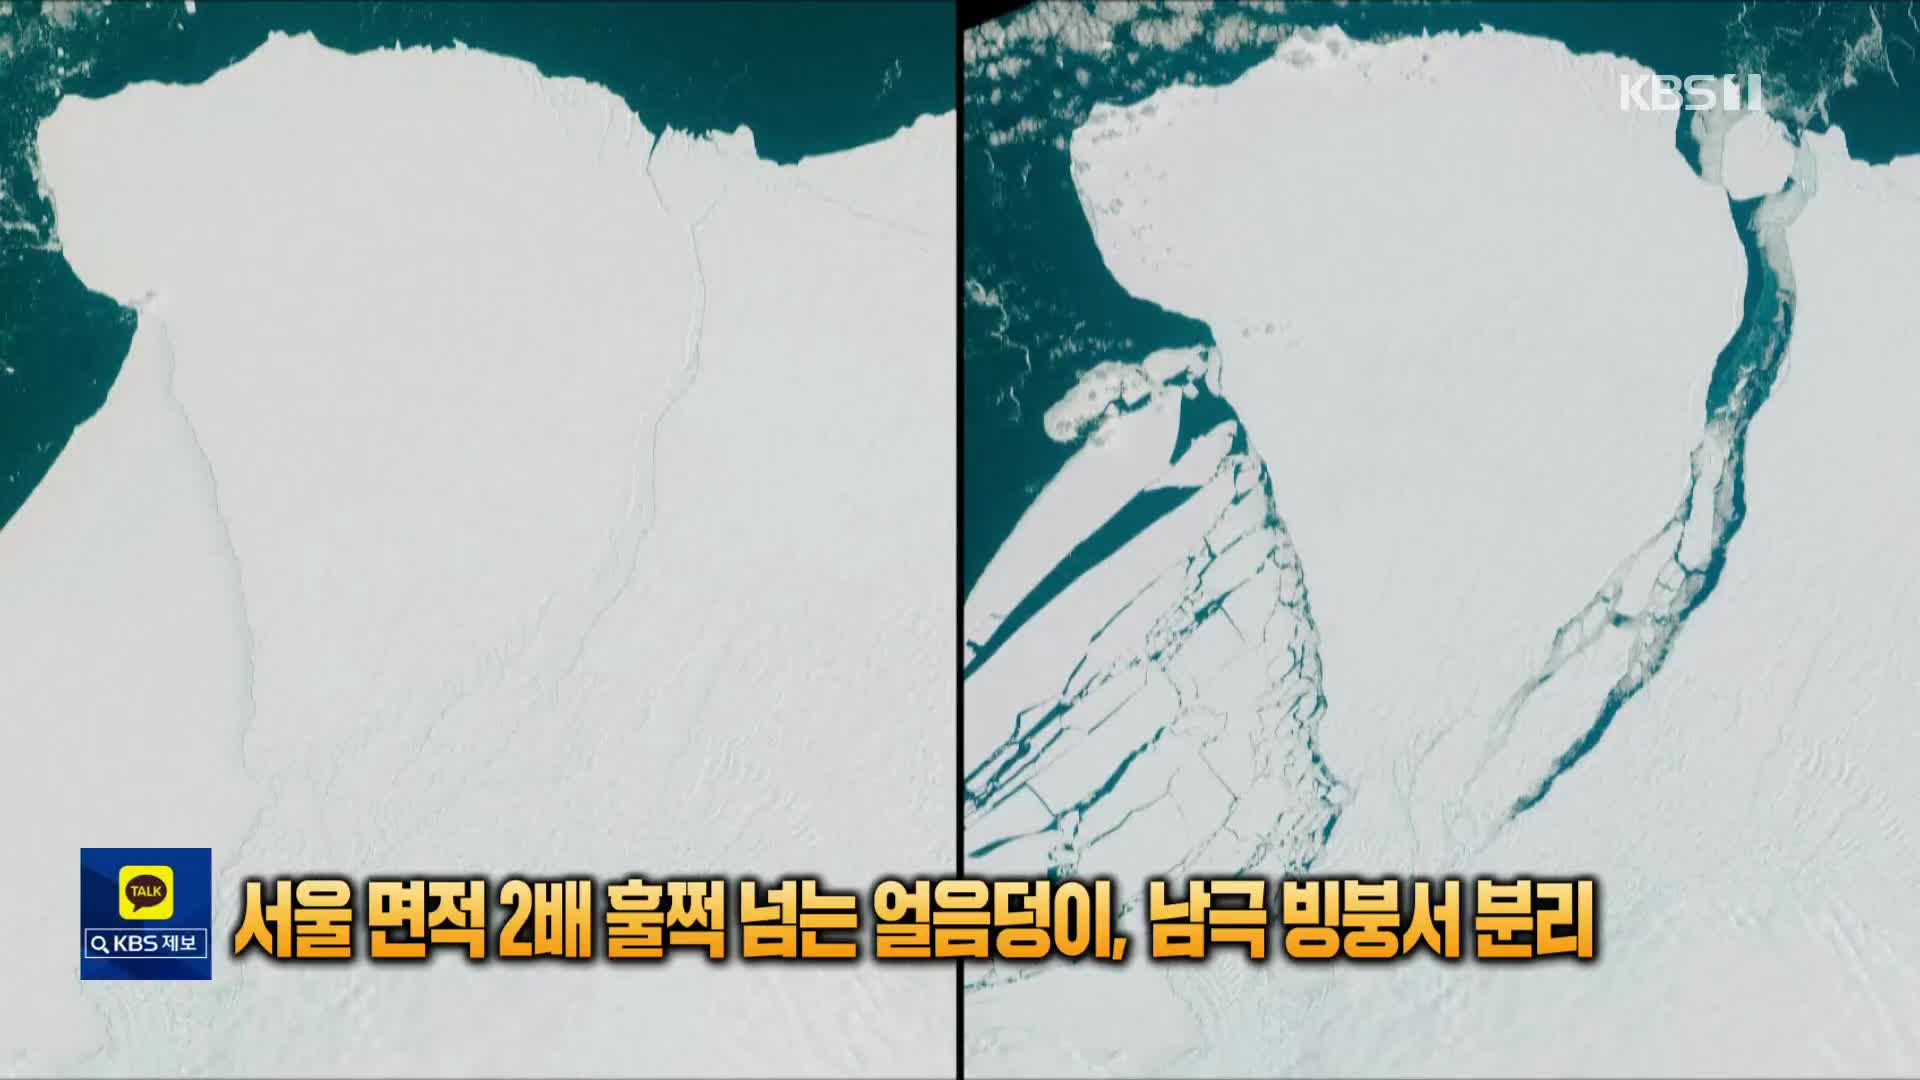 [톡톡 지구촌] 남극서 서울 2배 훌쩍 넘는 ‘초대형 빙산’ 뚝 분리